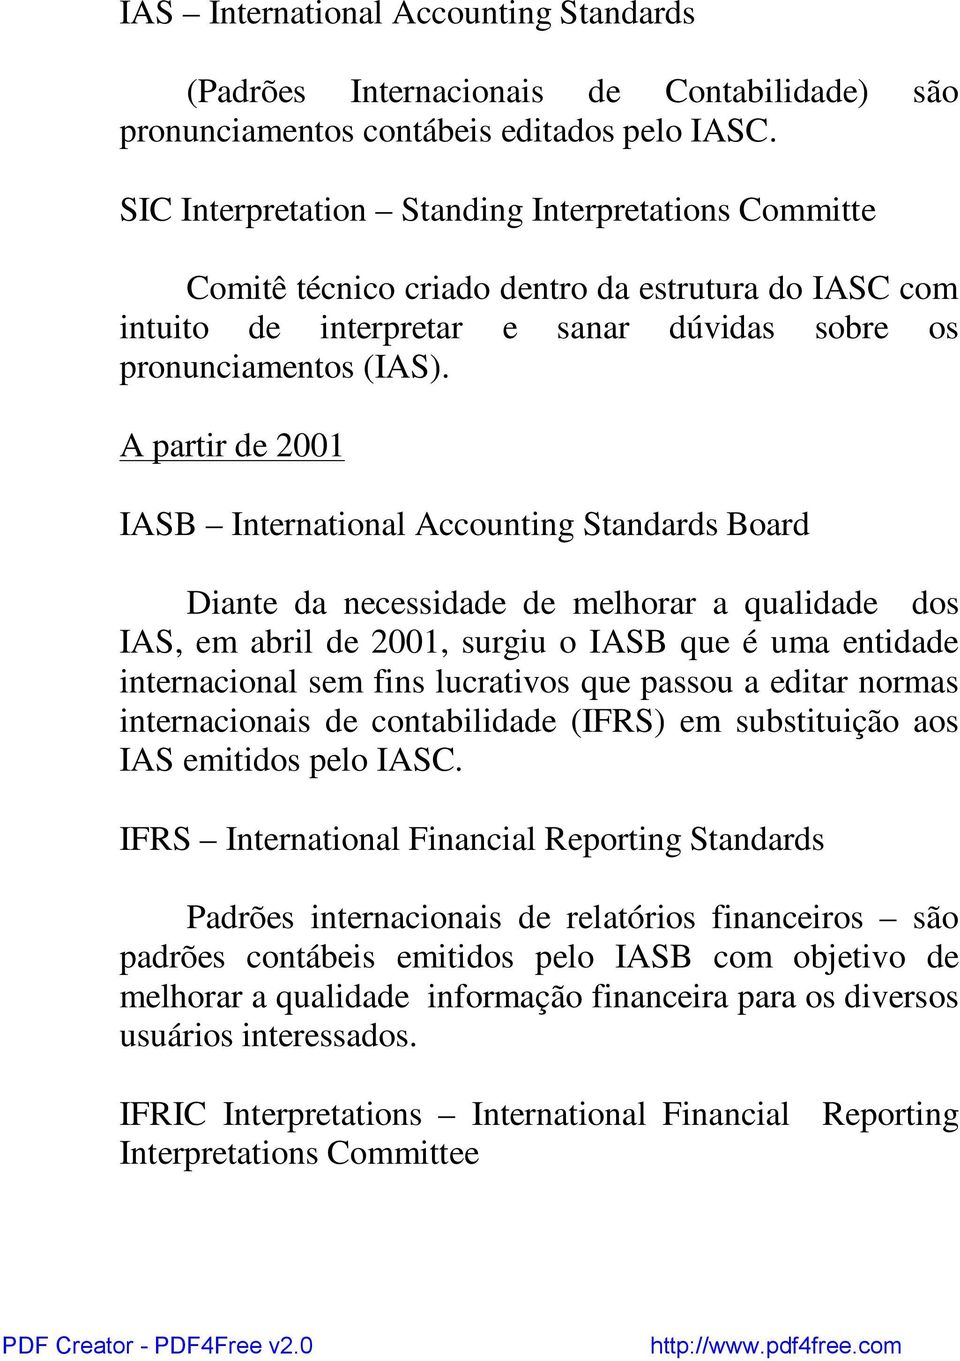 A partir de 2001 IASB International Accounting Standards Board Diante da necessidade de melhorar a qualidade dos IAS, em abril de 2001, surgiu o IASB que é uma entidade internacional sem fins